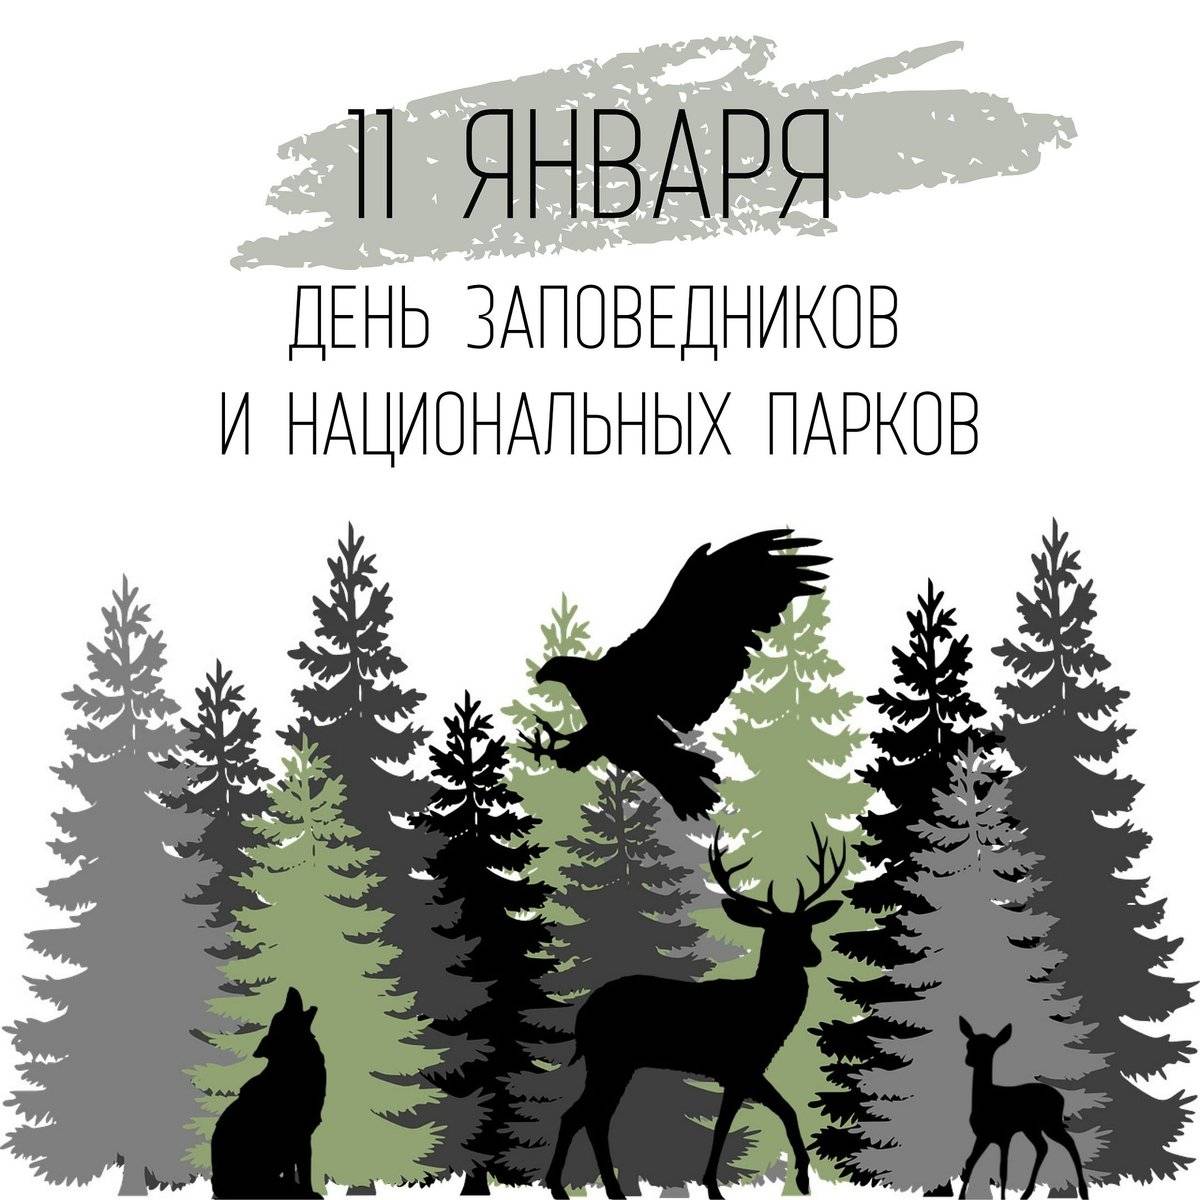 11 января — день заповедников и национальных парков россии